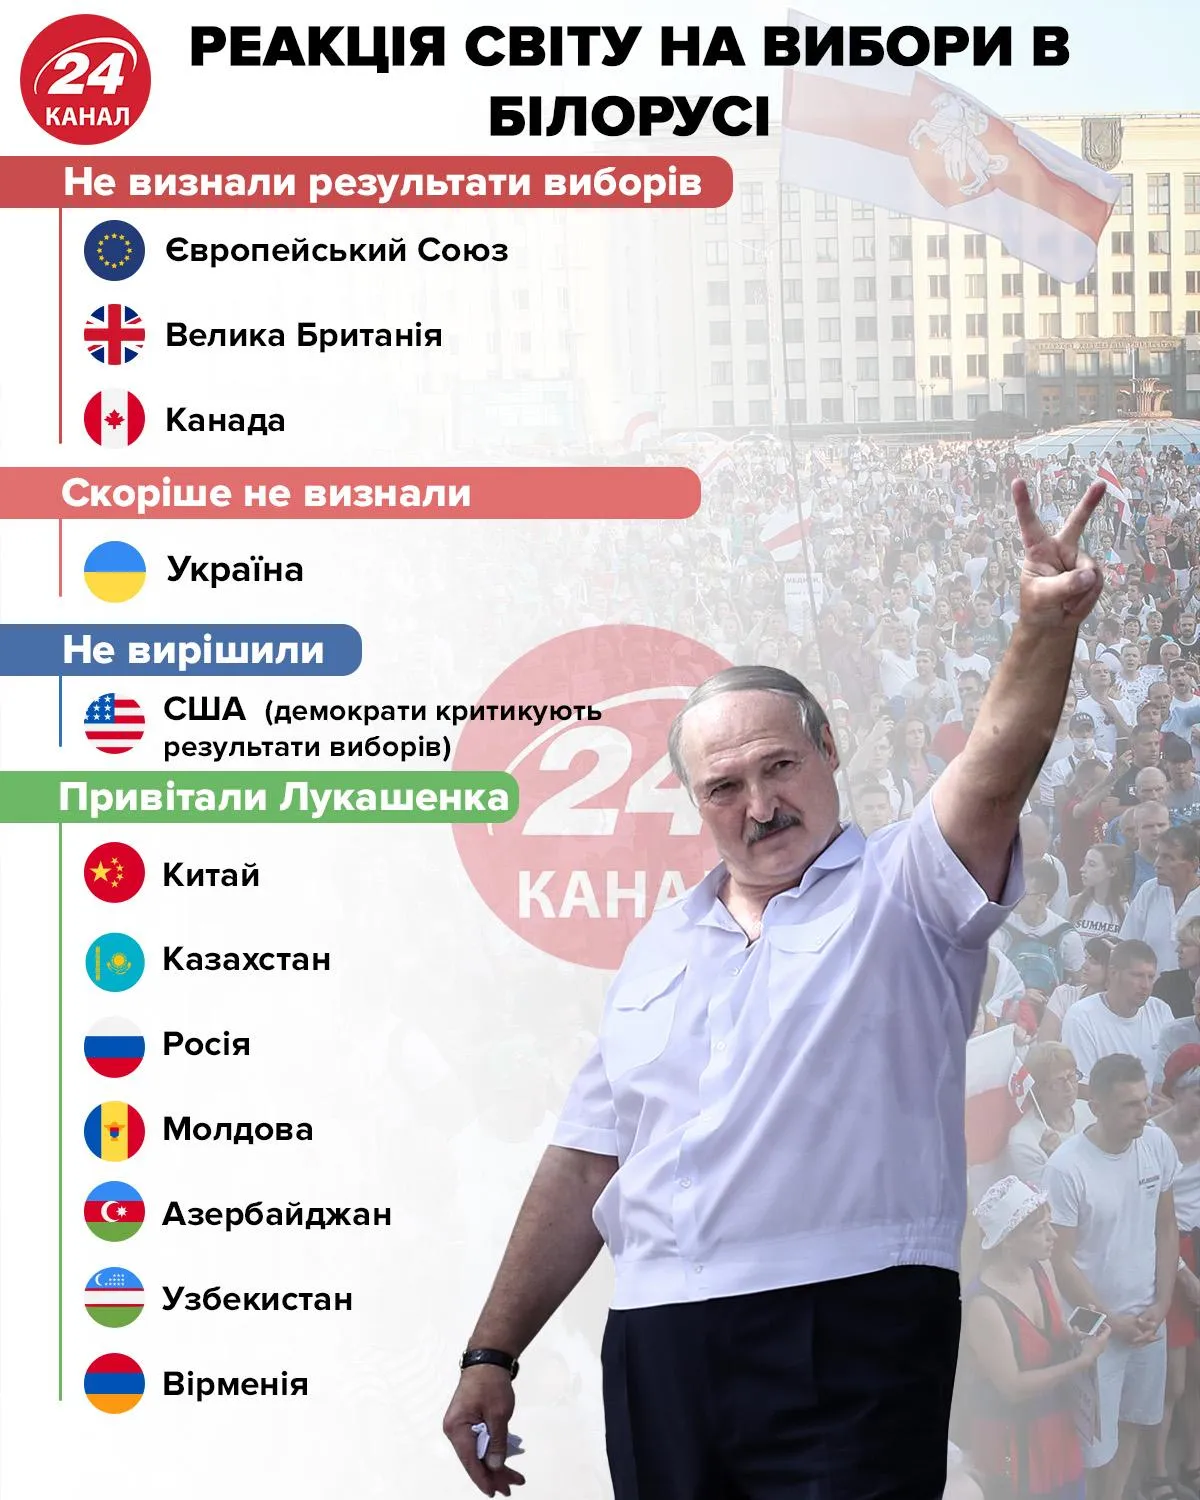 Реакция мира на выборы в Беларуси инфографика 24 канала